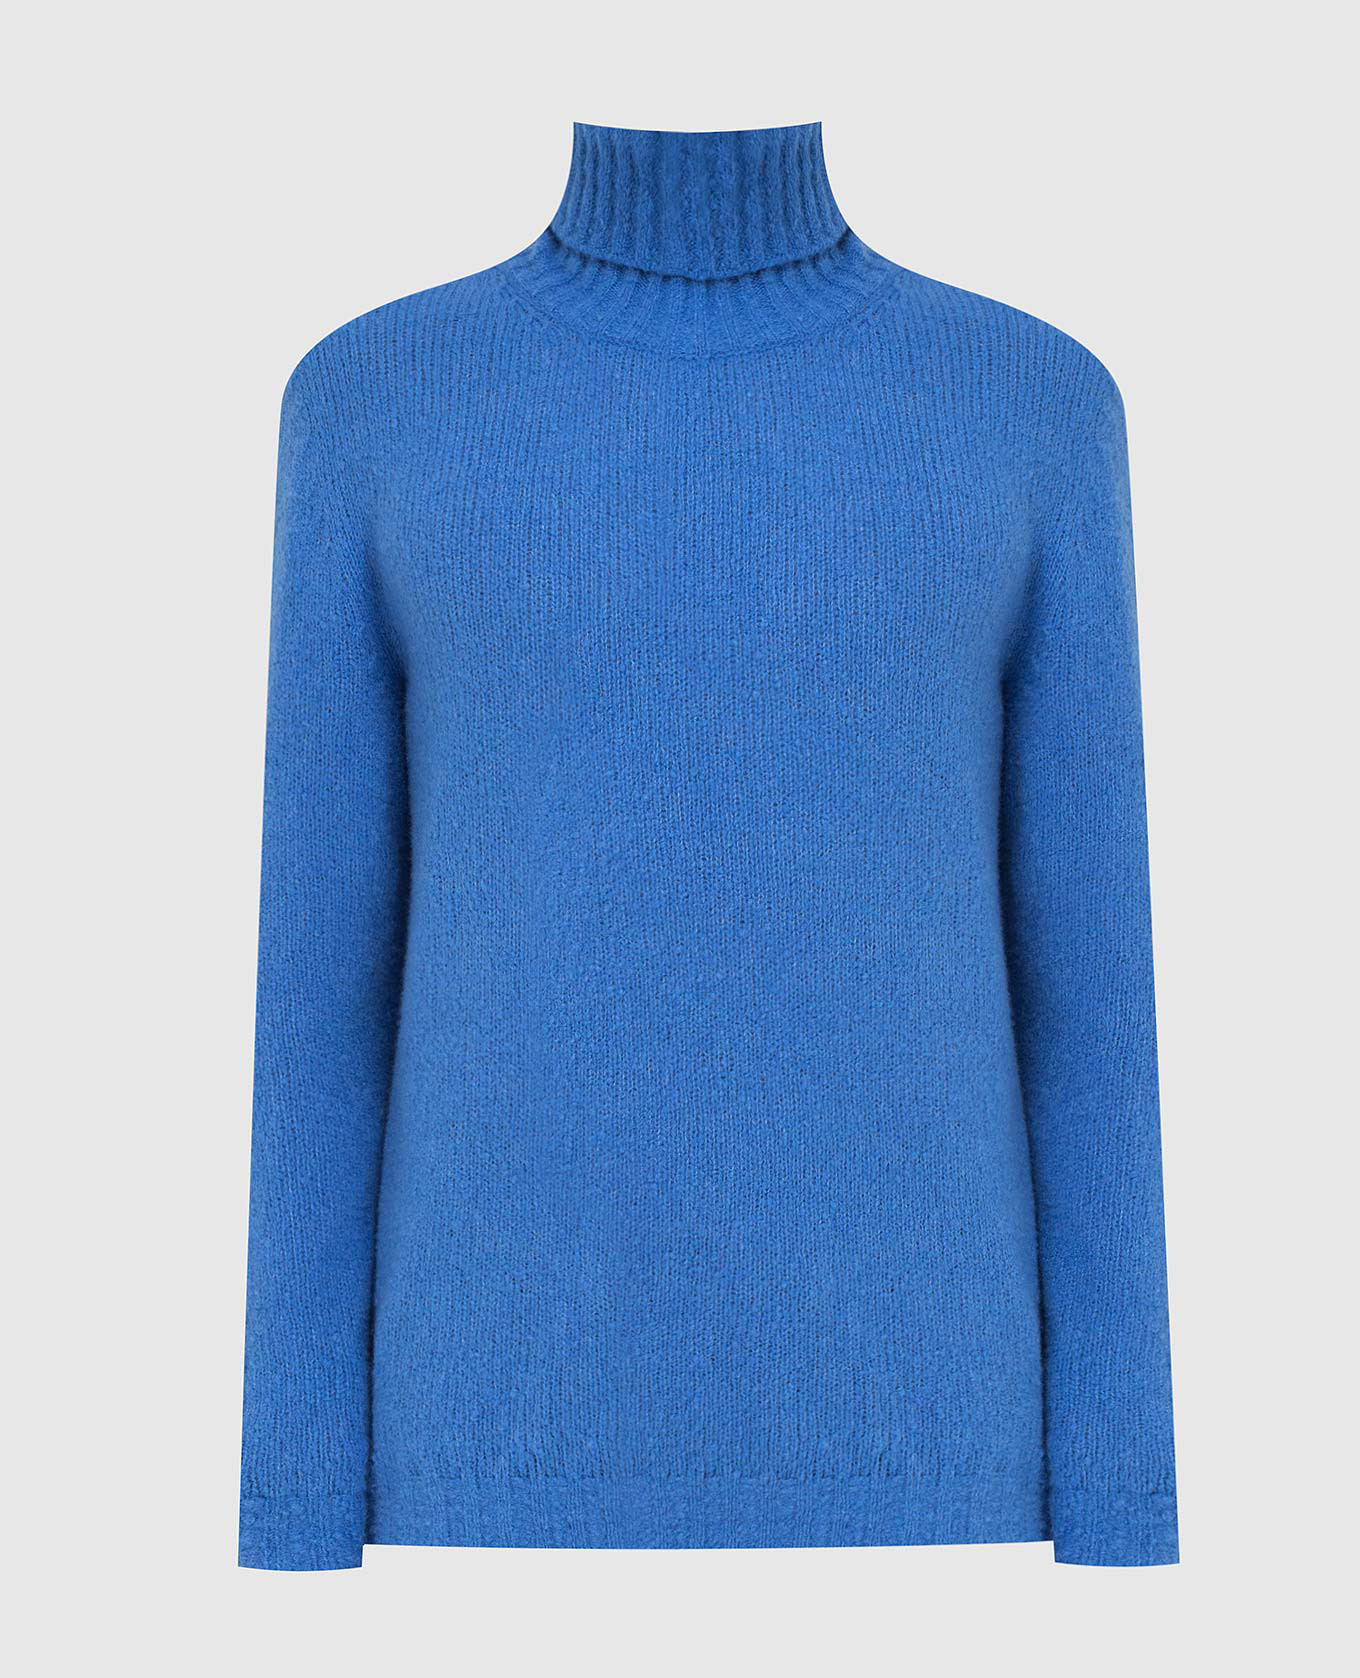 Синий свитер из шерсти мериноса и кашемира